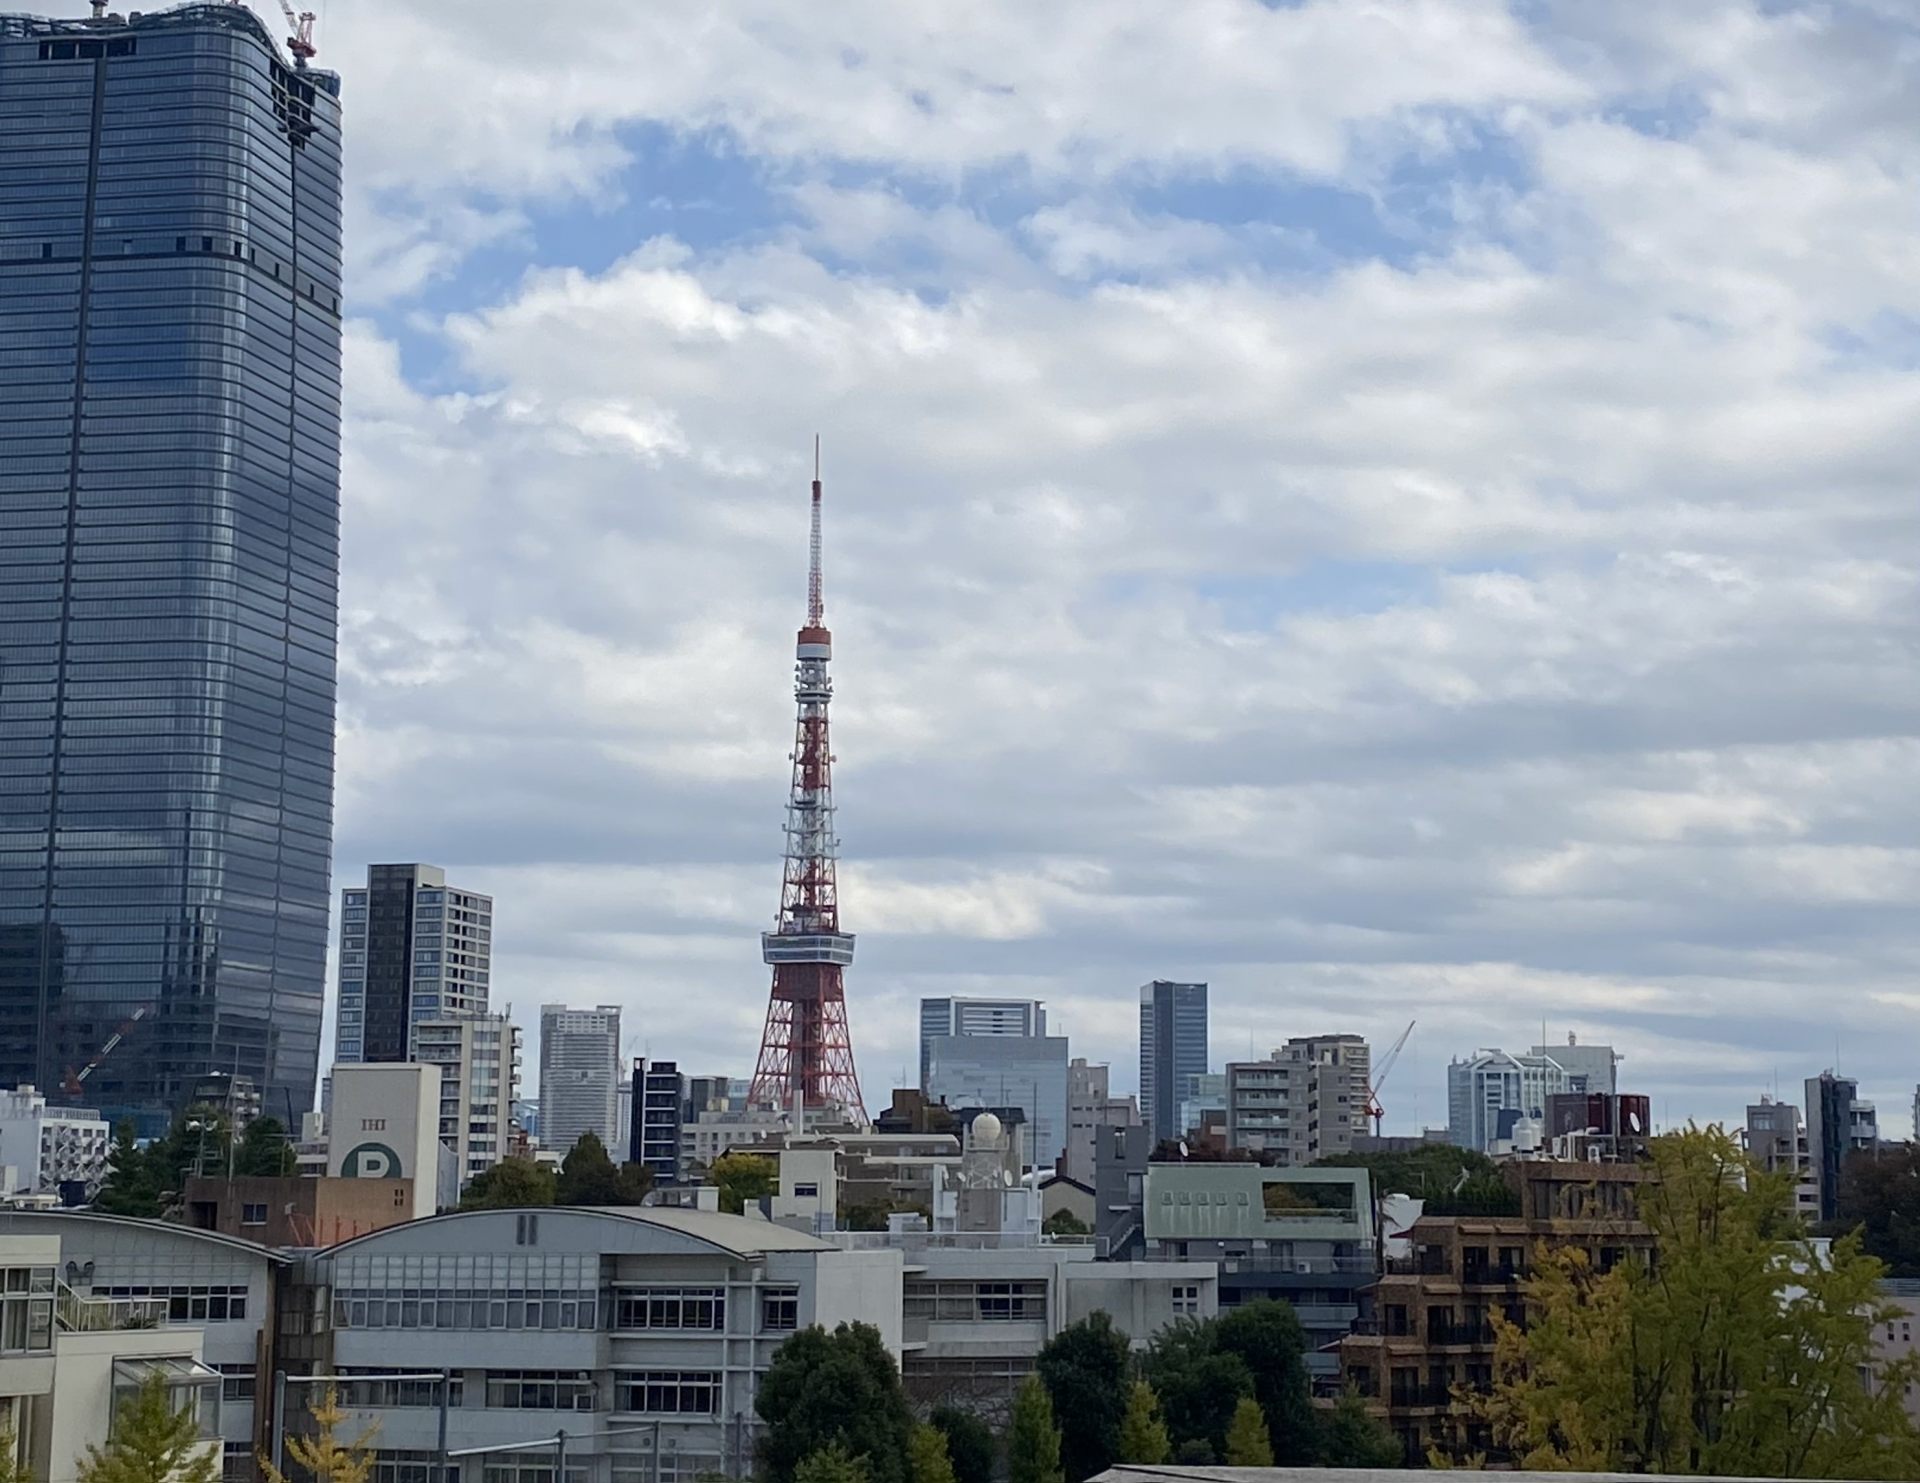 六本木ヒルズから見た東京タワー
せっかくなので東京らしい写真を載せてみました♪